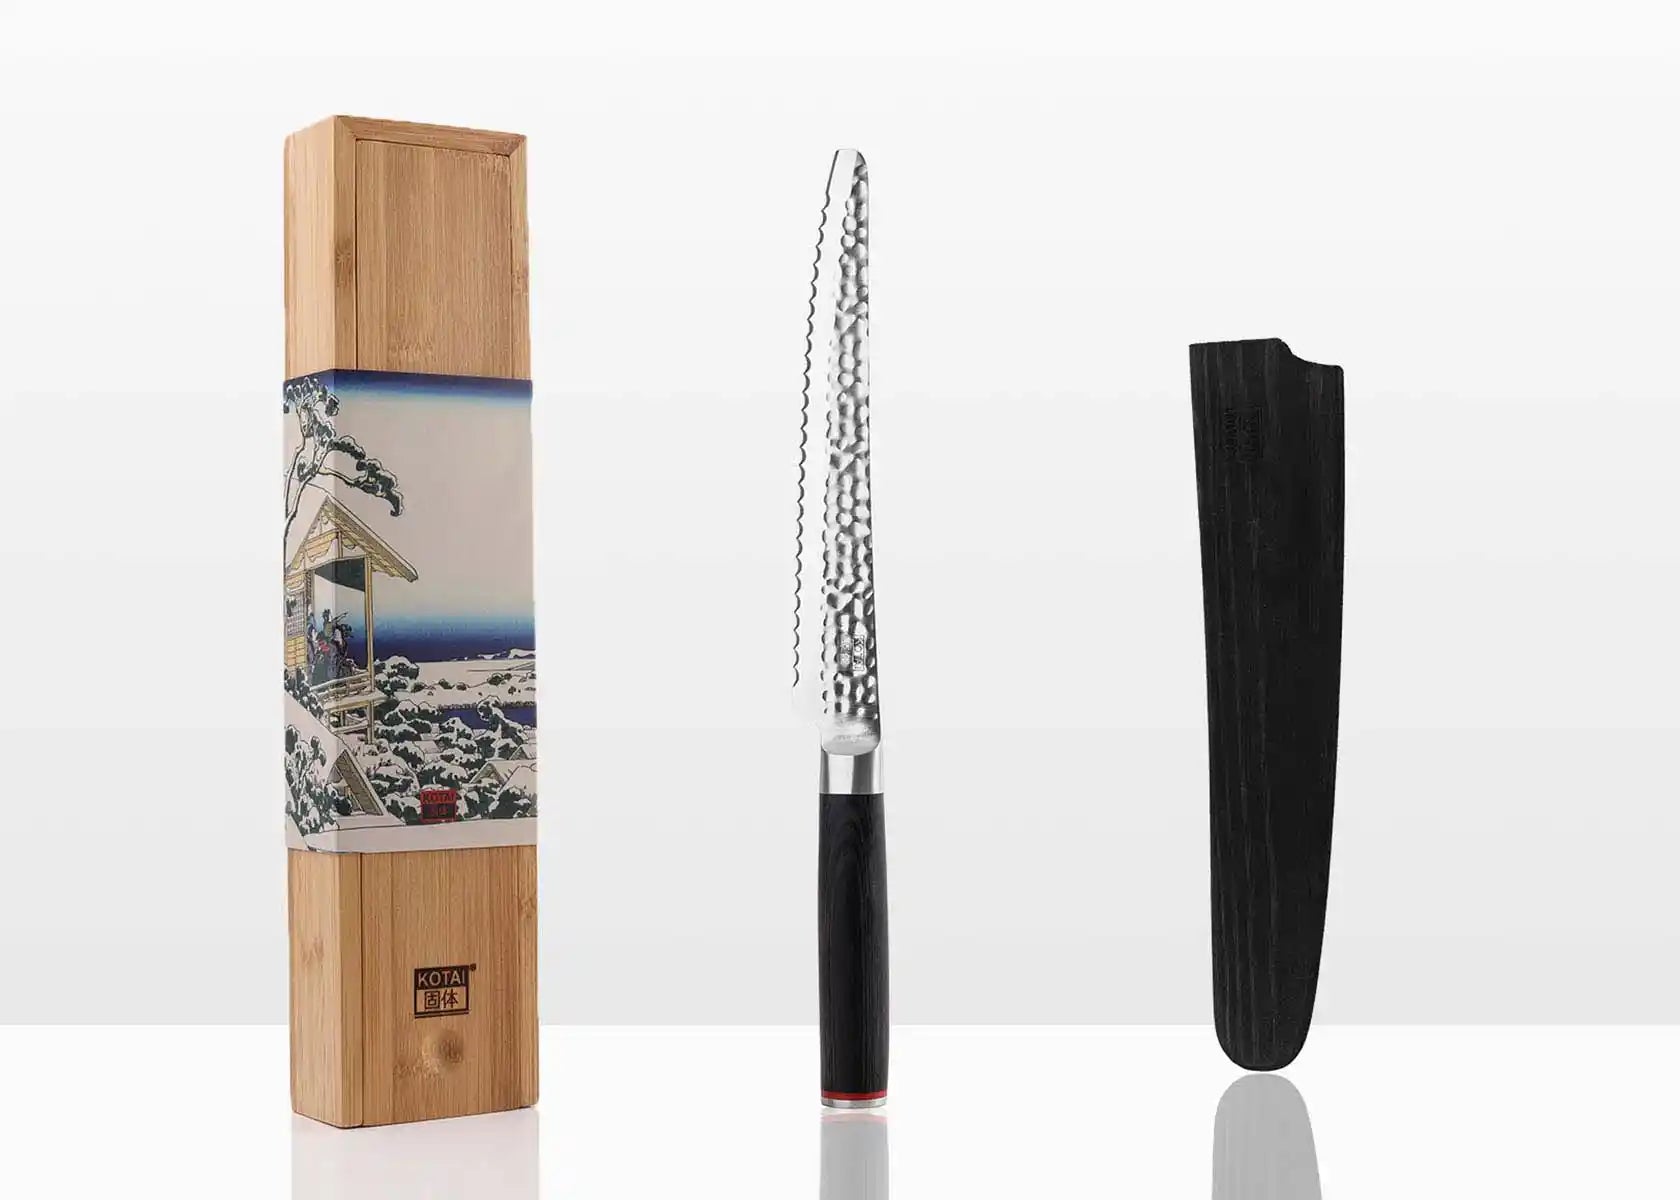 D&K couteau à pain, manche en bois de hêtre, 32 cm